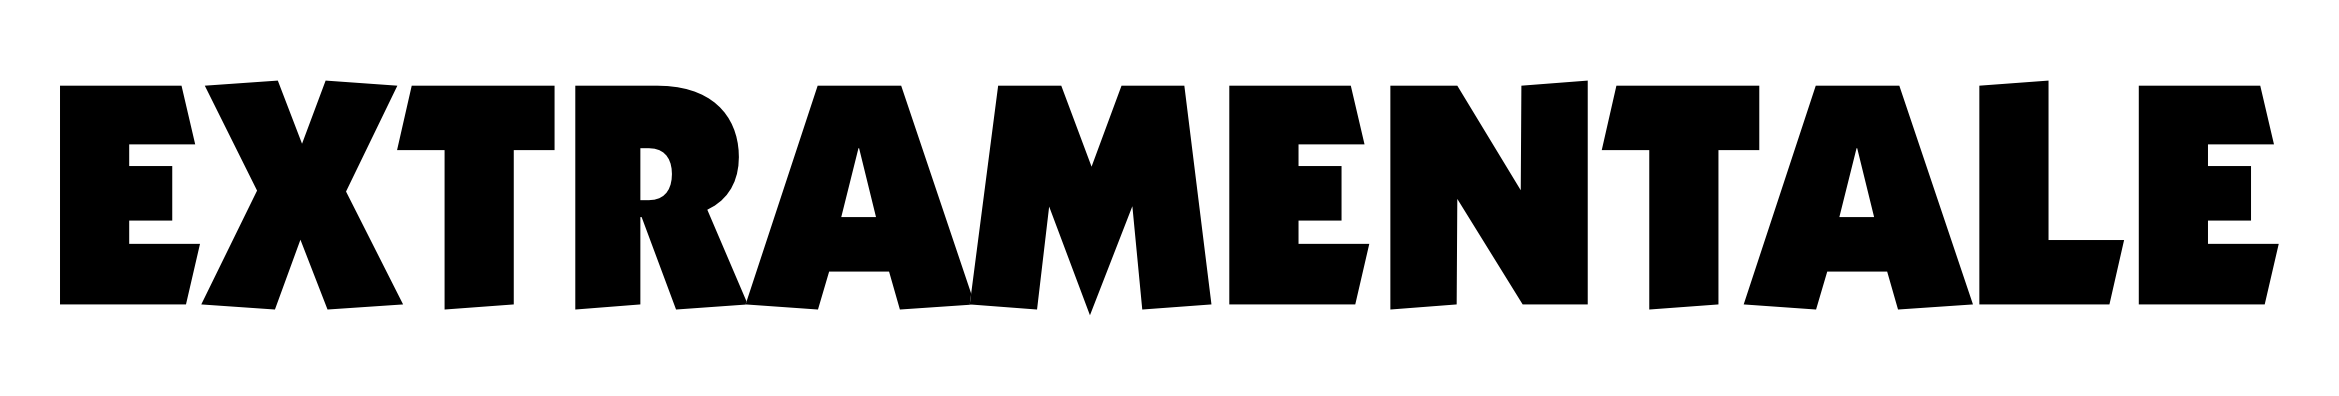 Logo de la plateforme Extramentale contenant un lien redirigeant sur leur site internet.